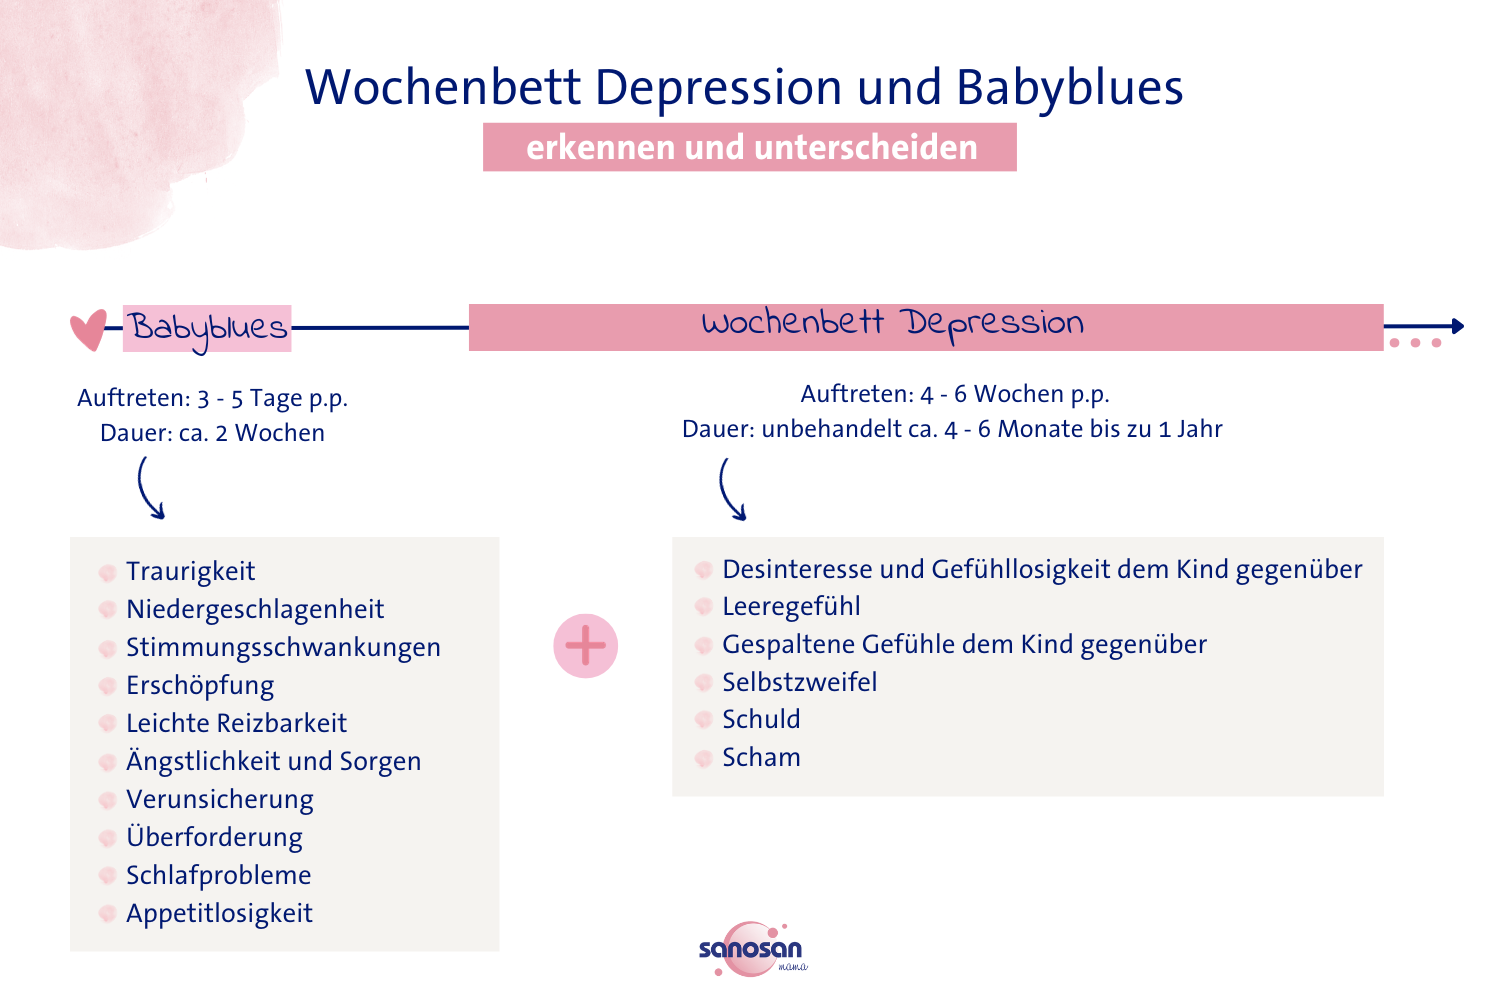 Infografik zu den Unterschieden von Babyblues und Wochenbett Depression 